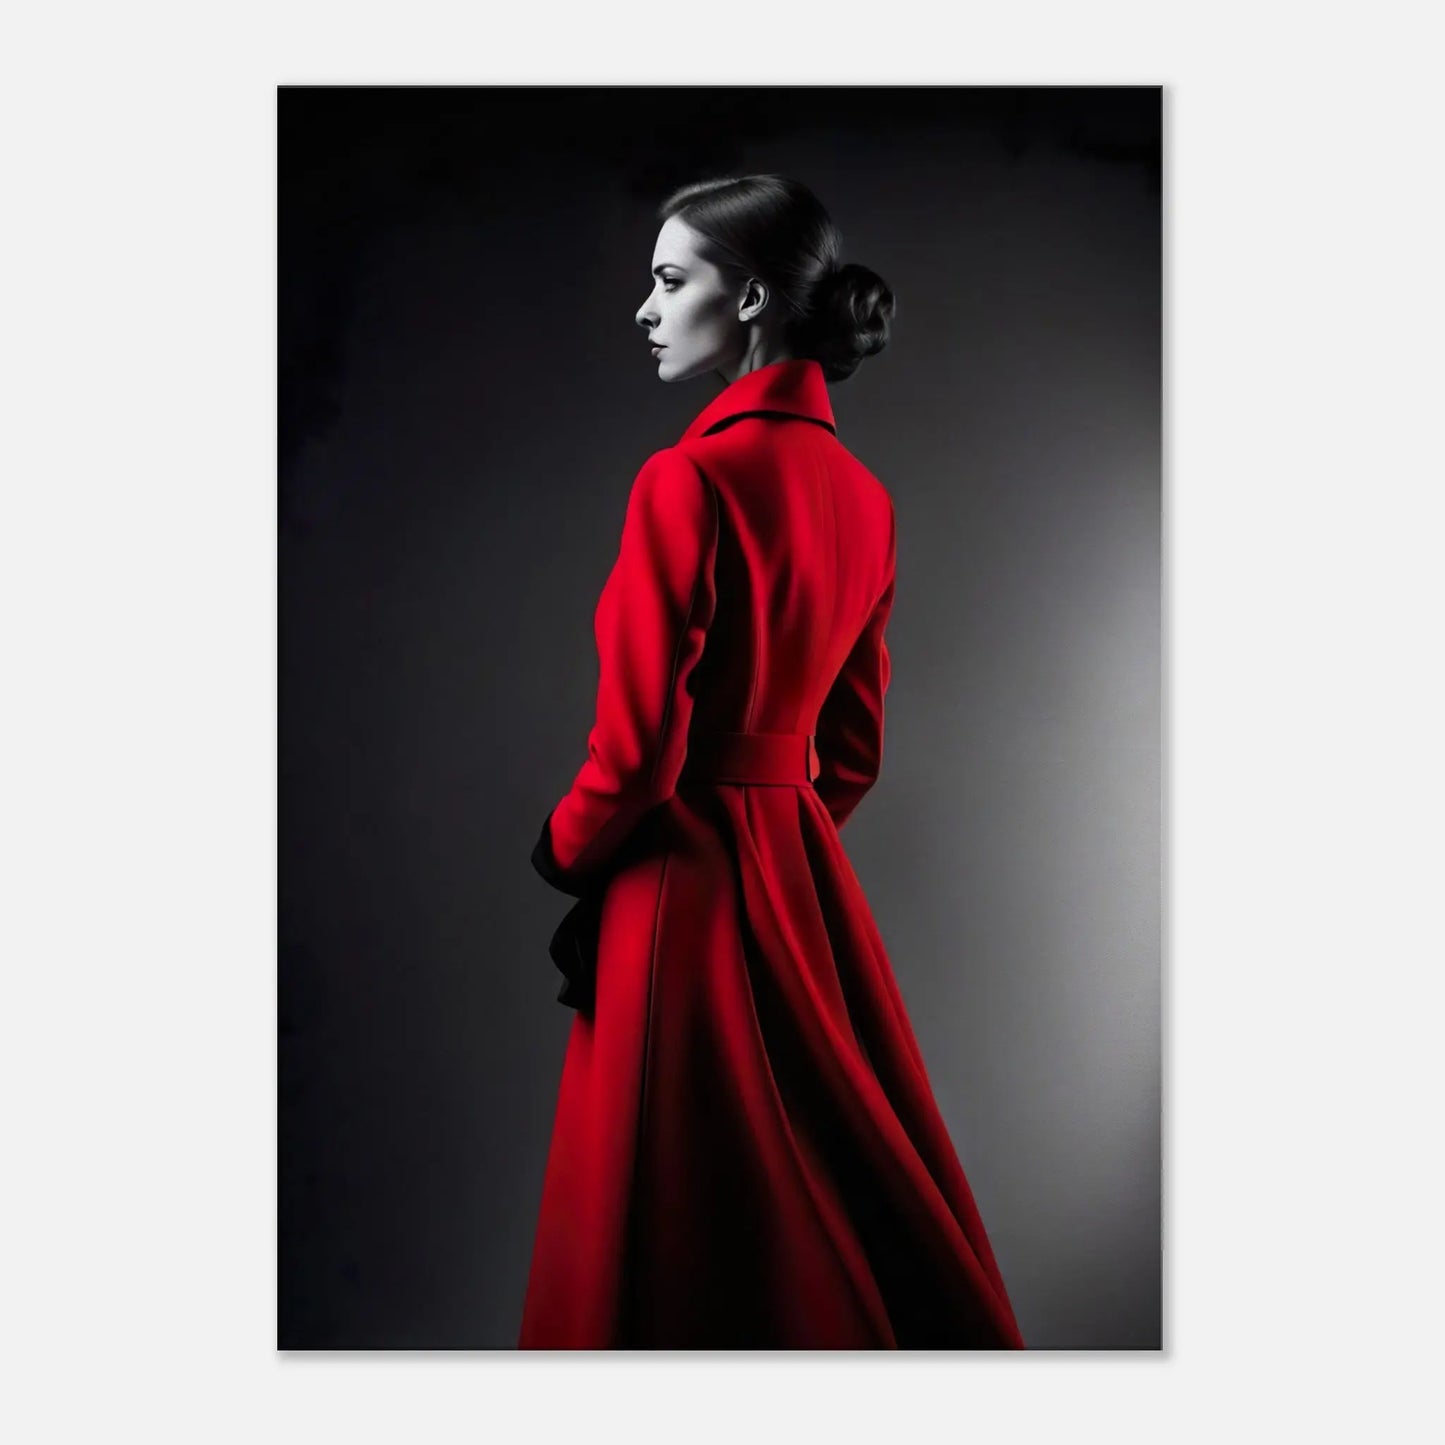 Leinwandbild - Frau im roten Mantel - Schwarz-Weiß Stil, KI-Kunst - RolConArt, Schwarz-Weiß mit Akzentfarben, 70x100-cm-28x40